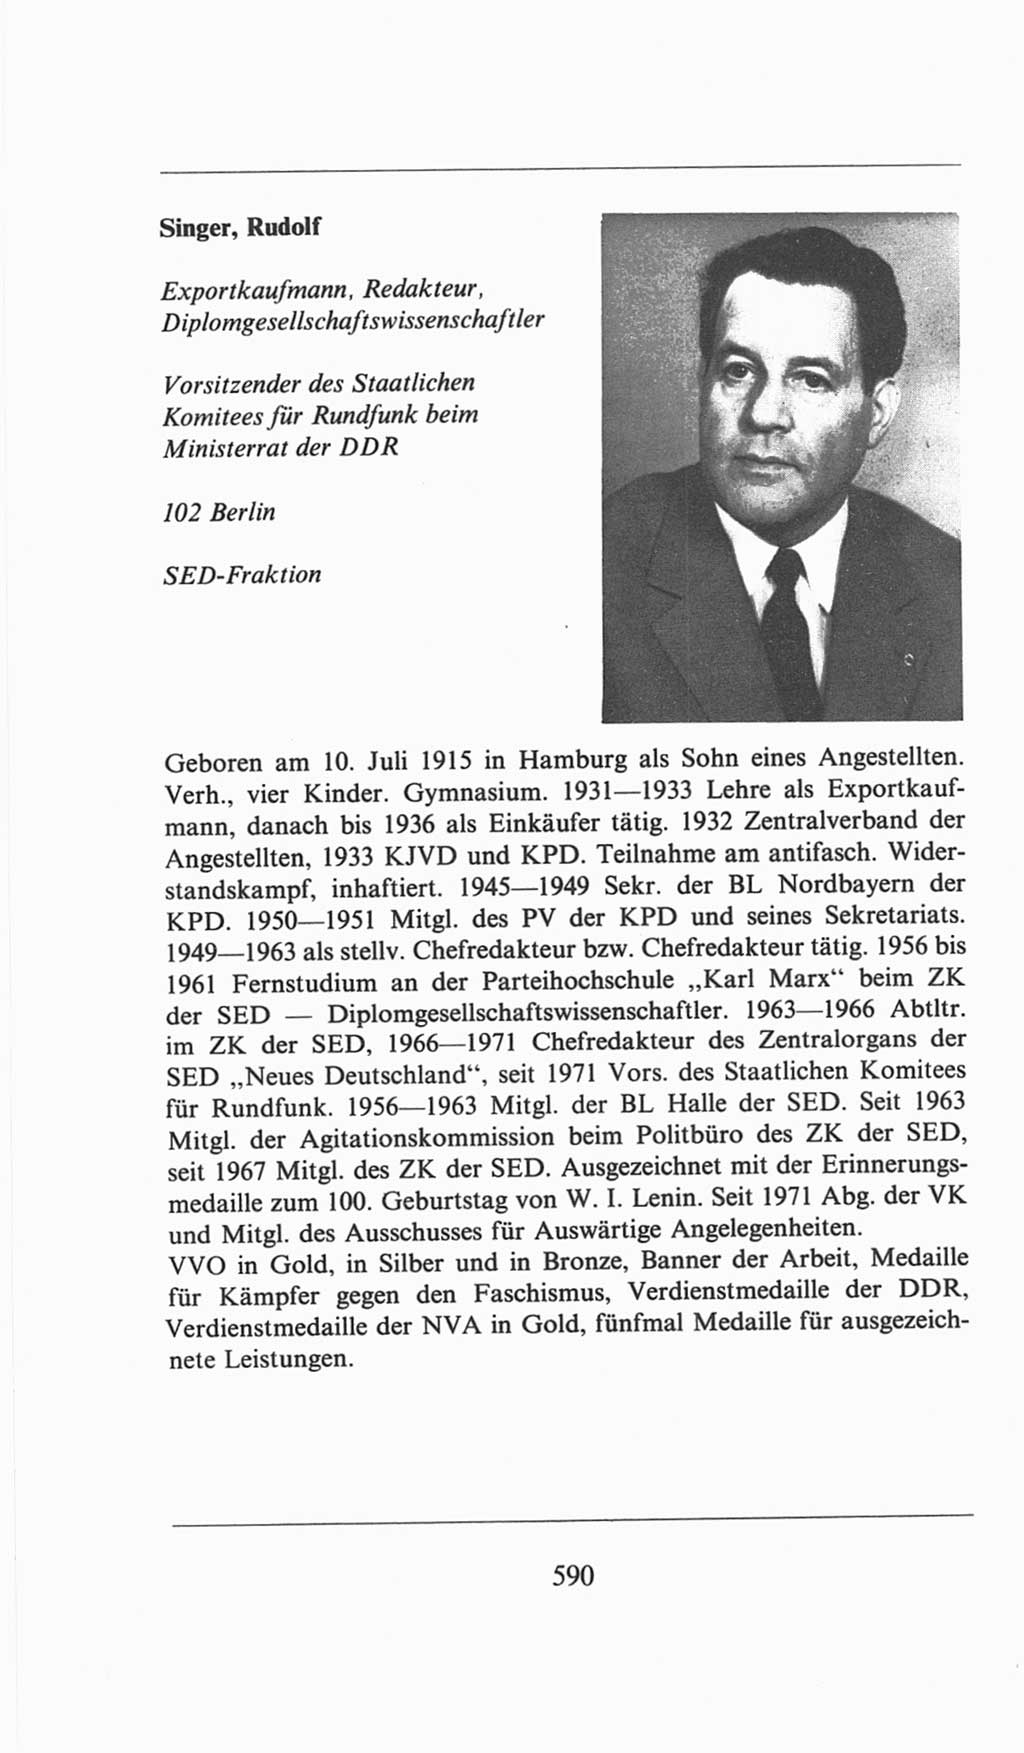 Volkskammer (VK) der Deutschen Demokratischen Republik (DDR), 6. Wahlperiode 1971-1976, Seite 590 (VK. DDR 6. WP. 1971-1976, S. 590)